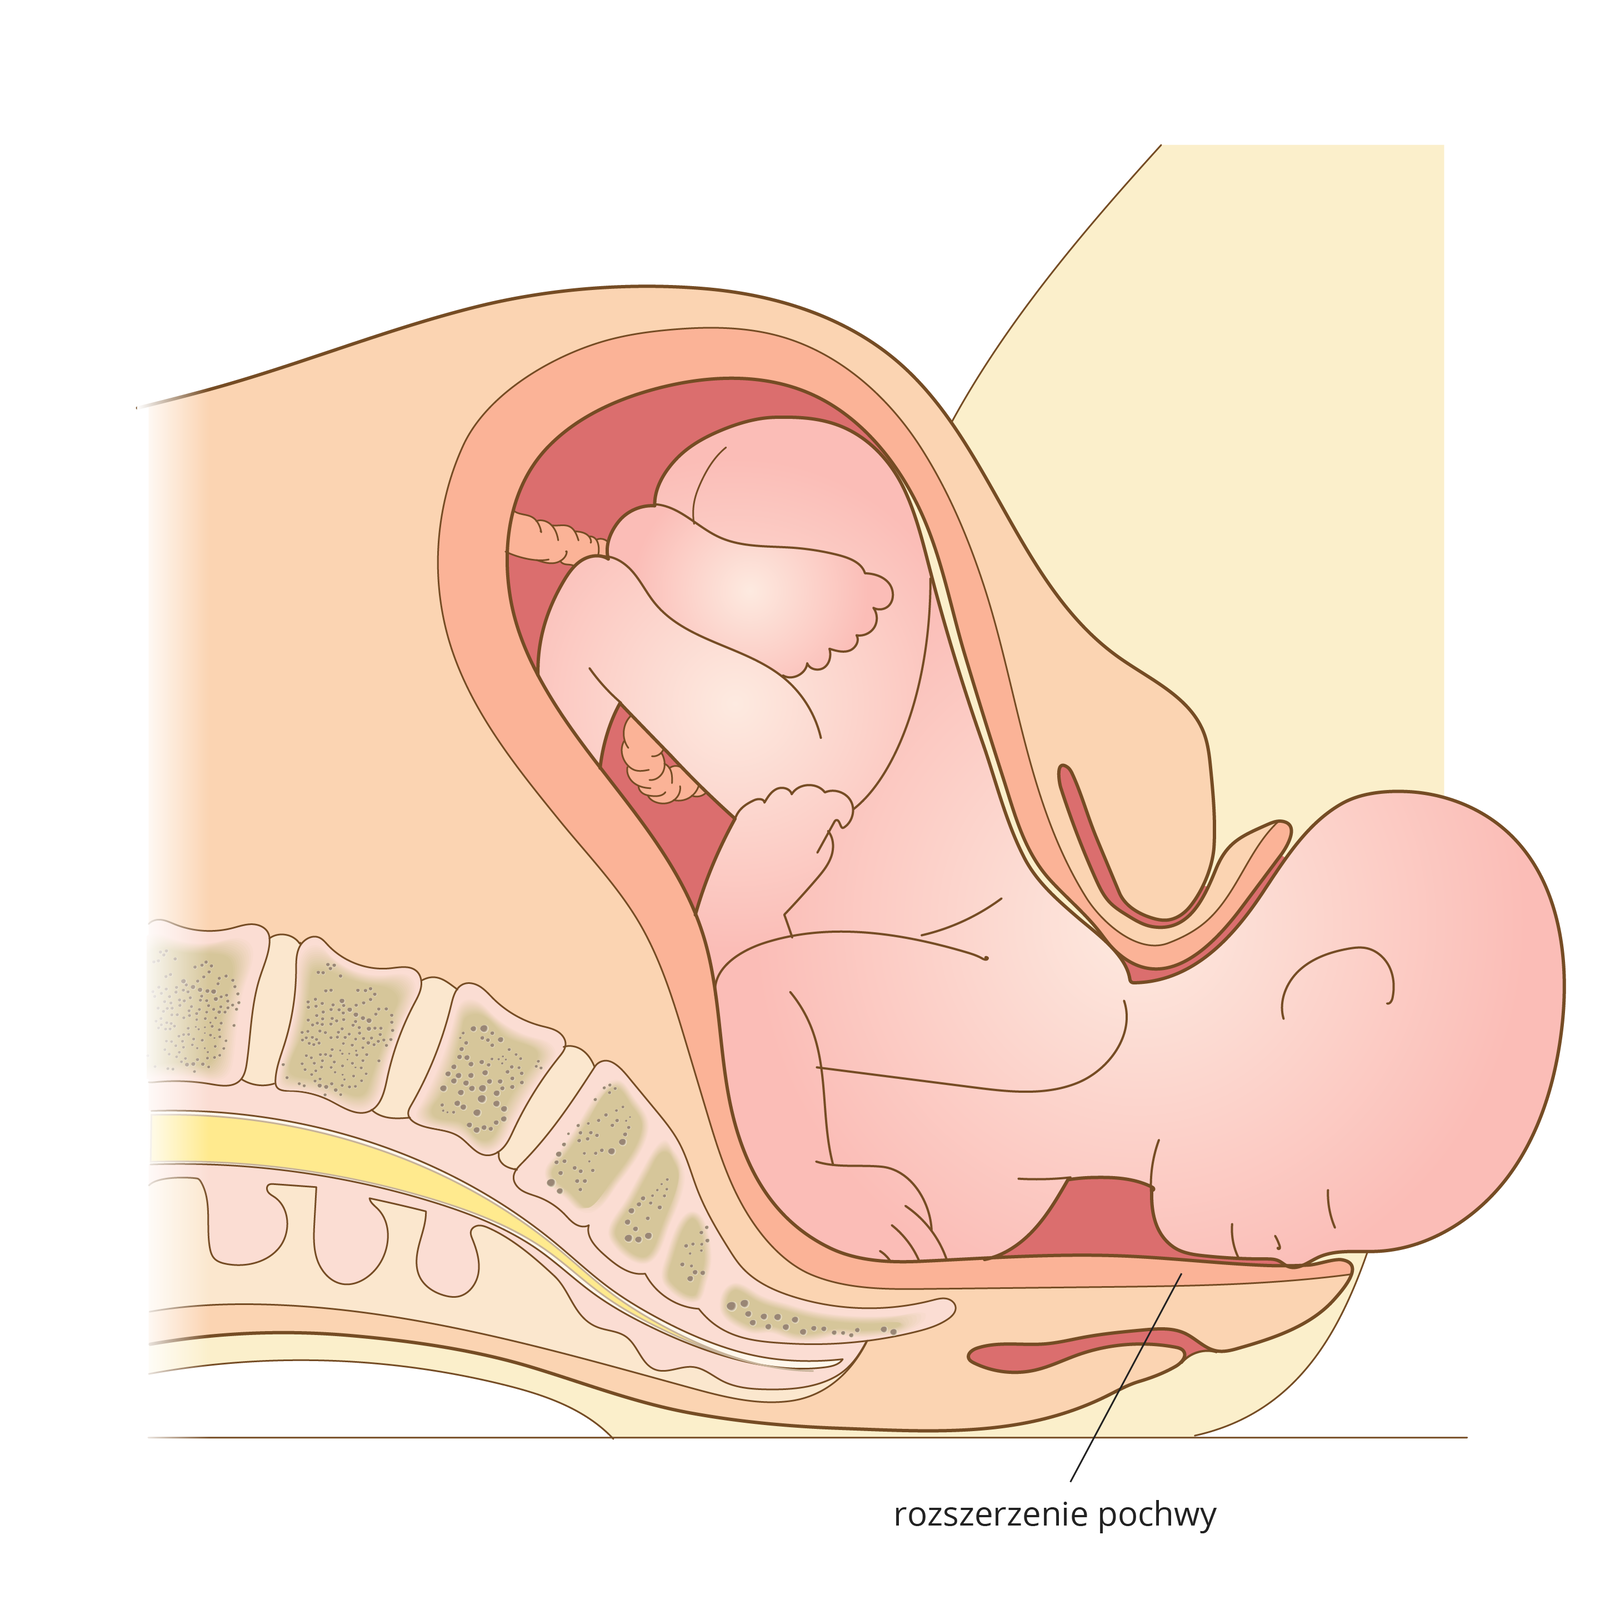 Ilustracja przedstawia kulminacyjny moment porodu. Dziecko jest wypychane przez rozszerzoną pochwę. Główka wychodzi na zewnątrz.